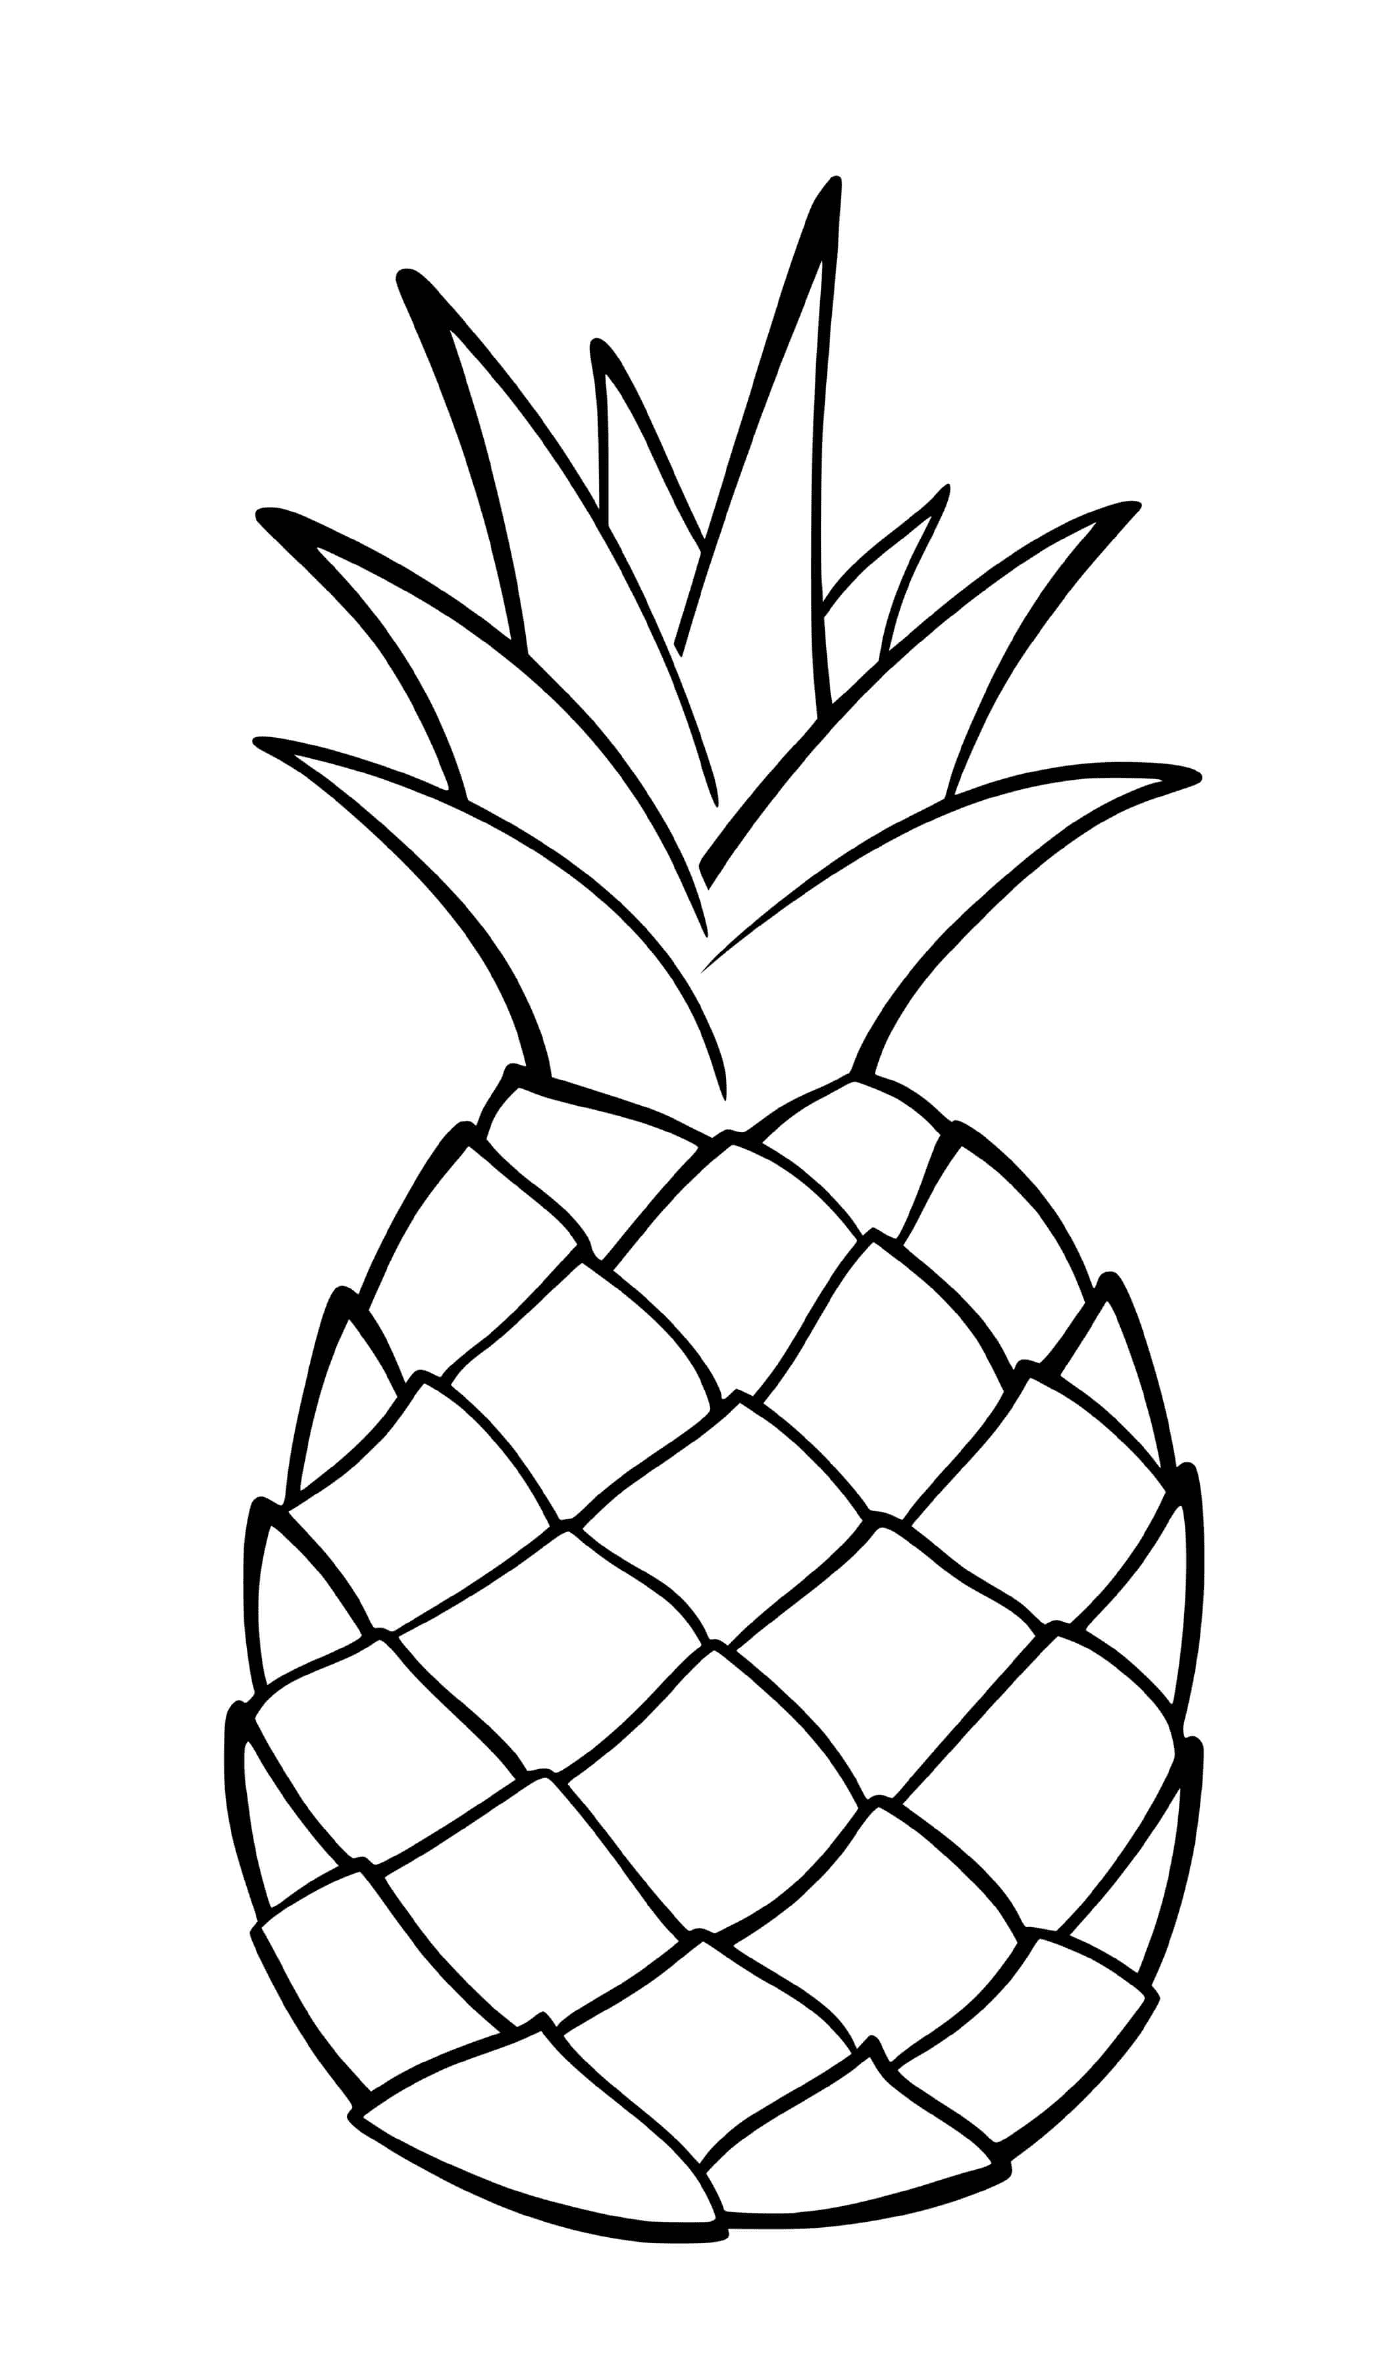  Eine exotische Frucht namens Ananas 